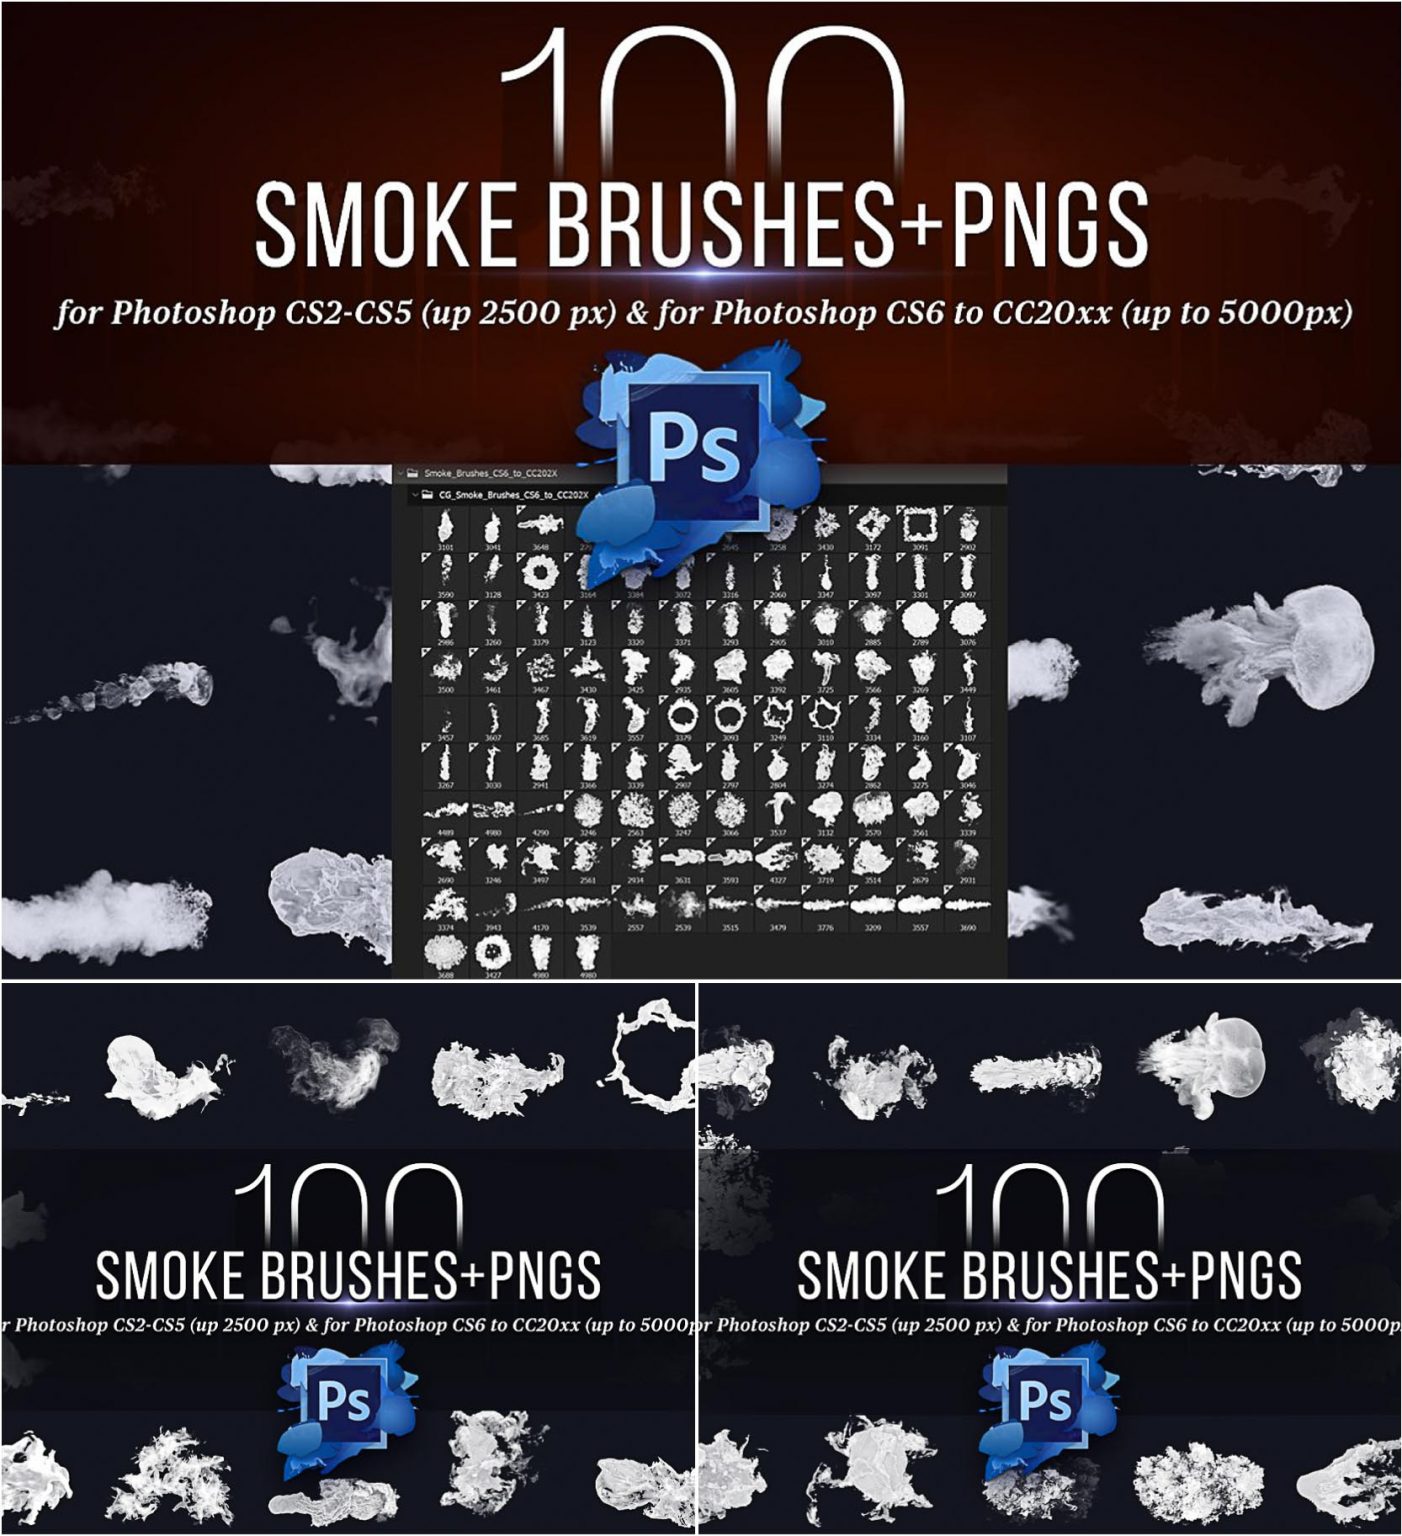 adobe photoshop cs5 smoke brushes free download